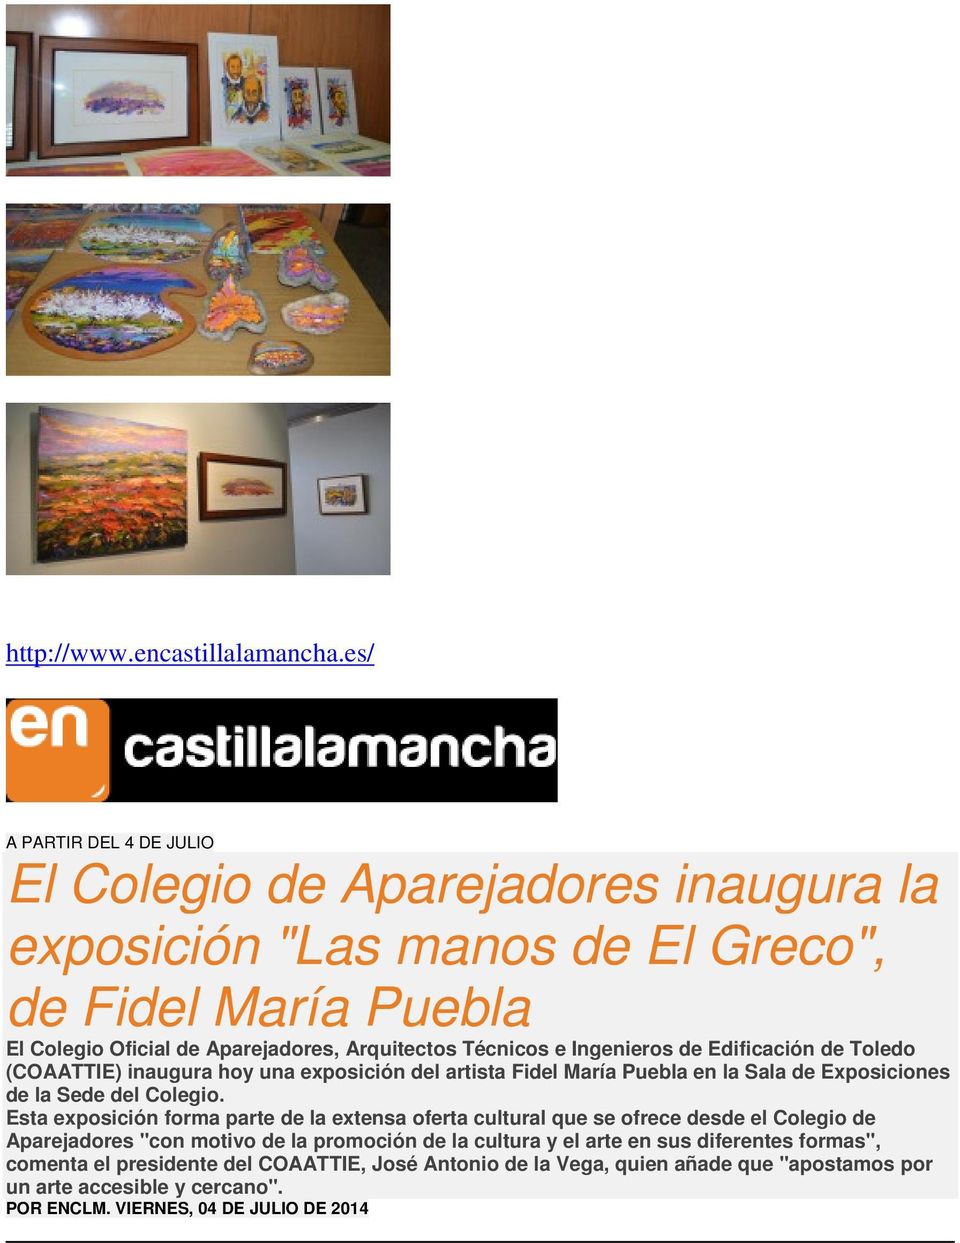 Técnicos e Ingenieros de Edificación de Toledo (COAATTIE) inaugura hoy una exposición del artista Fidel María Puebla en la Sala de Exposiciones de la Sede del Colegio.